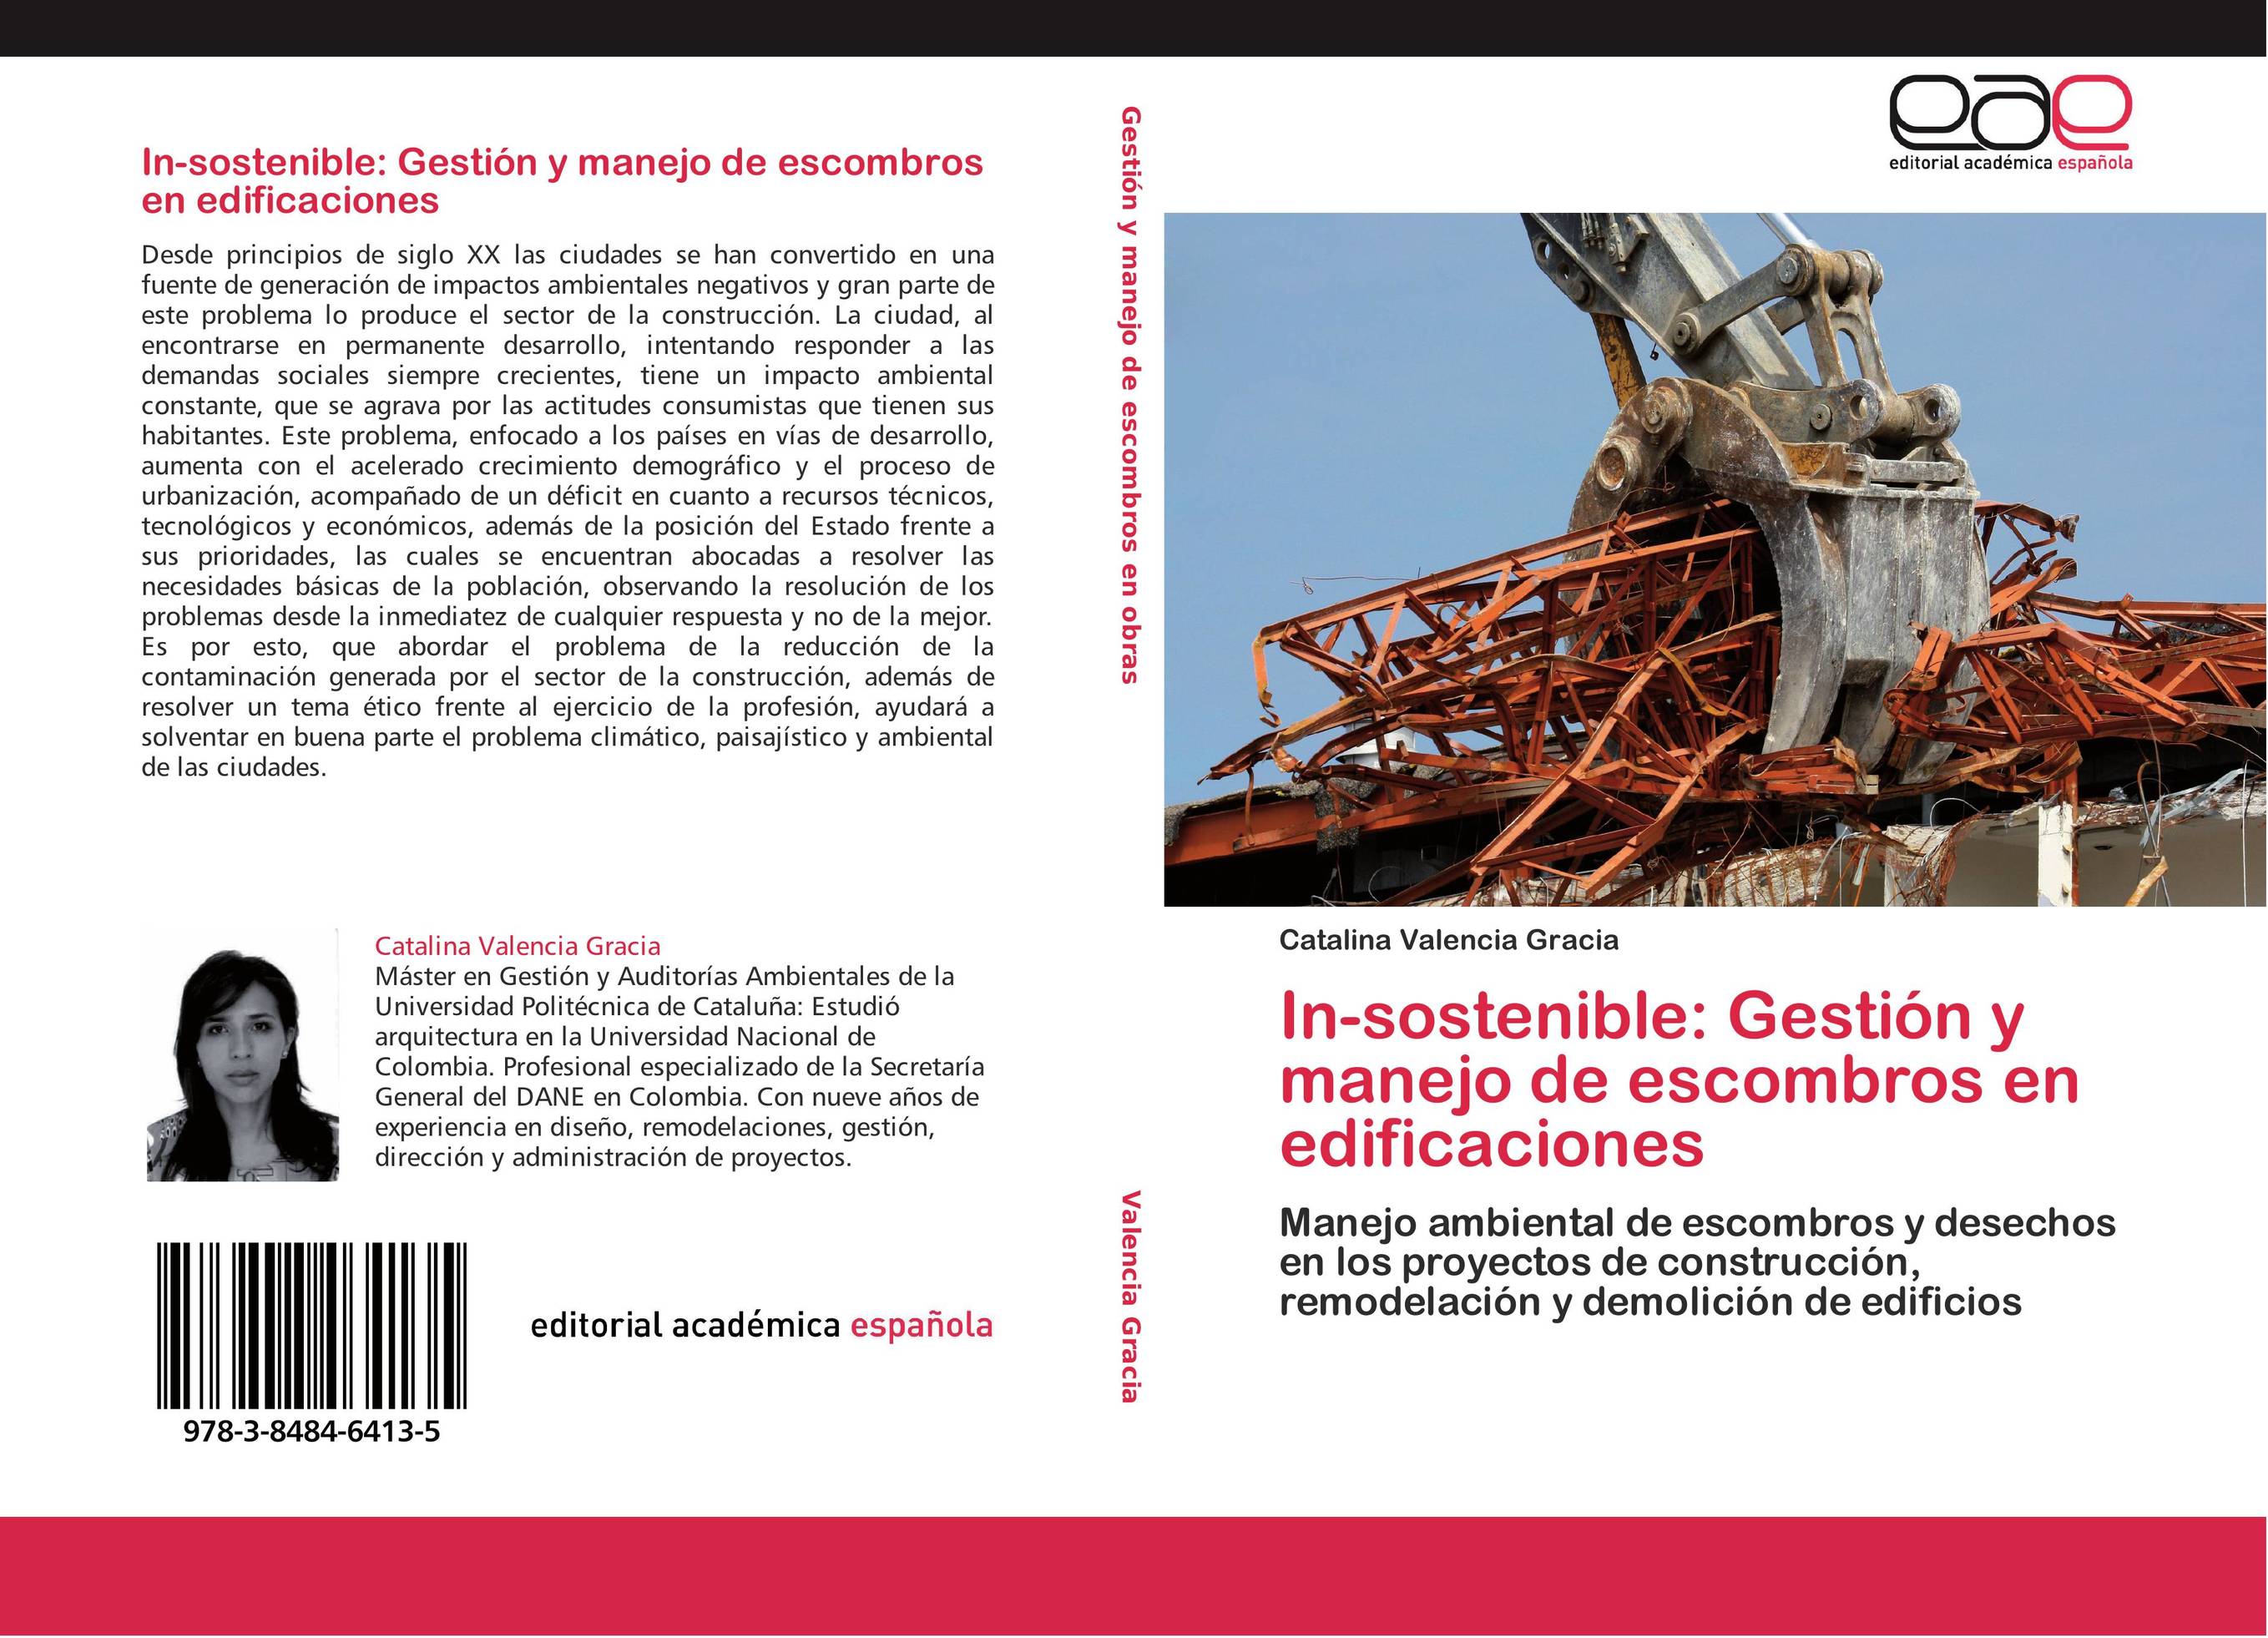 In-sostenible: Gestión y manejo de escombros en edificaciones